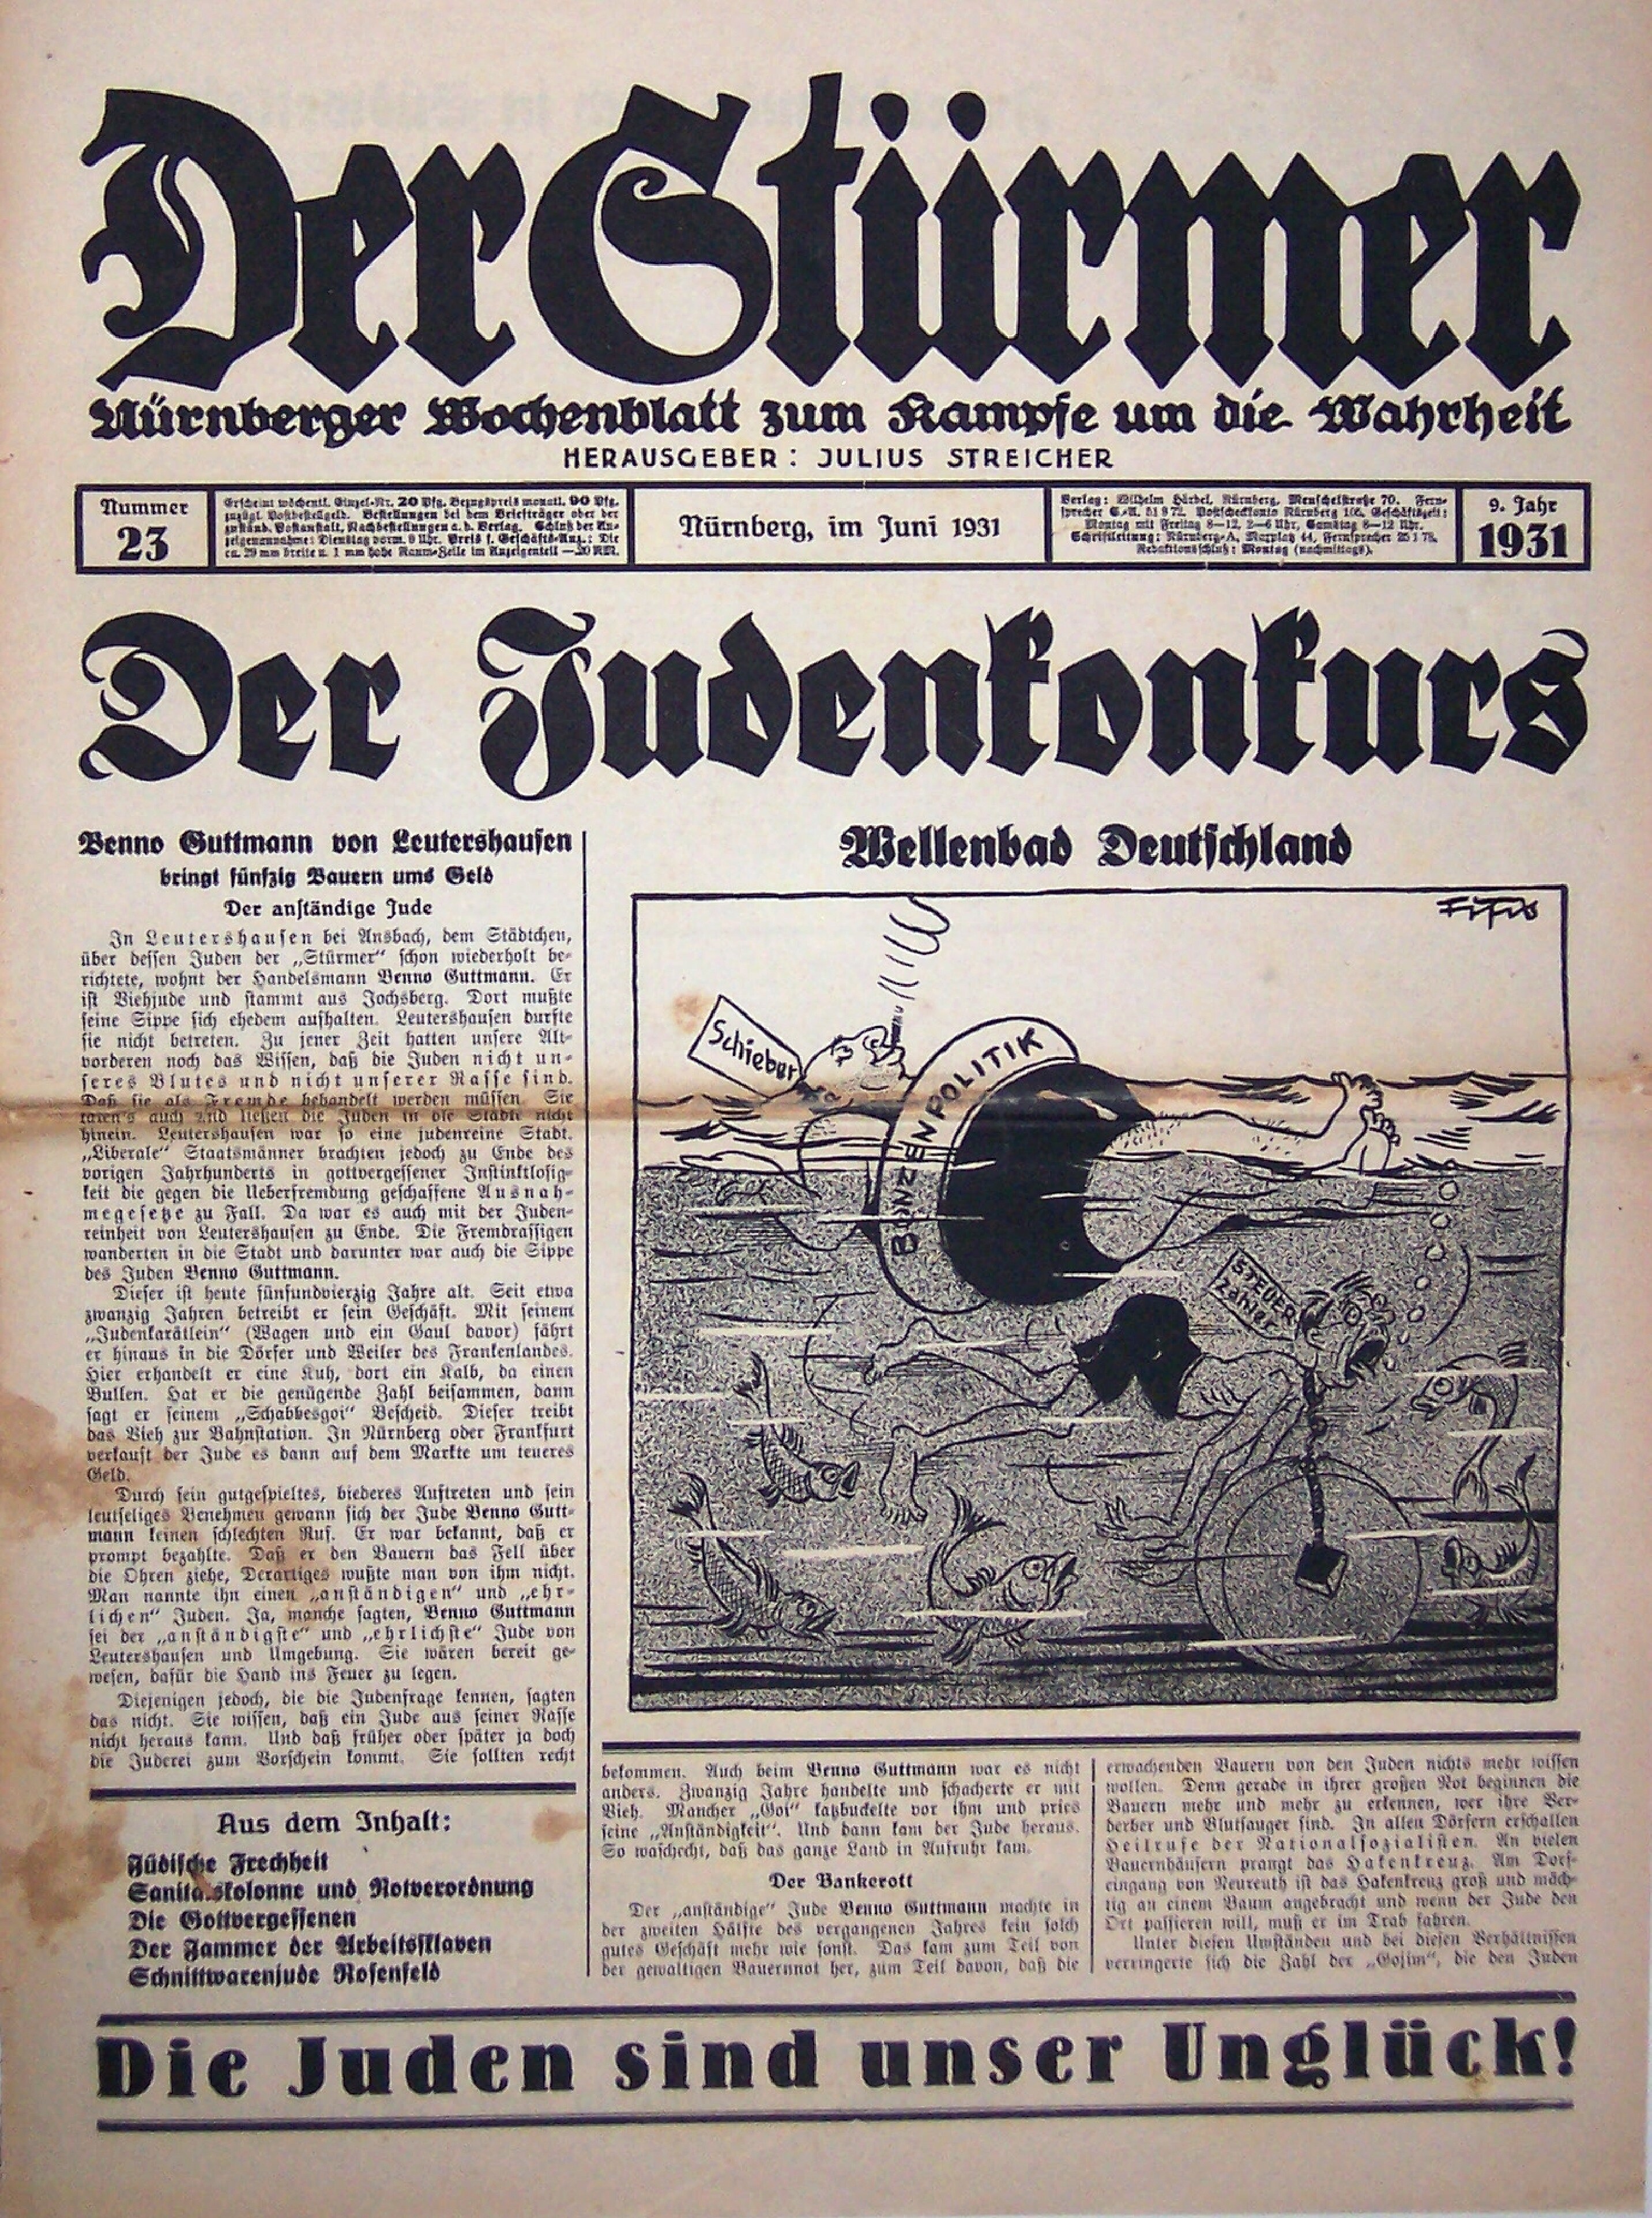 Der Stürmer - 1938 Nr. 23 - Der Judenkonkurs